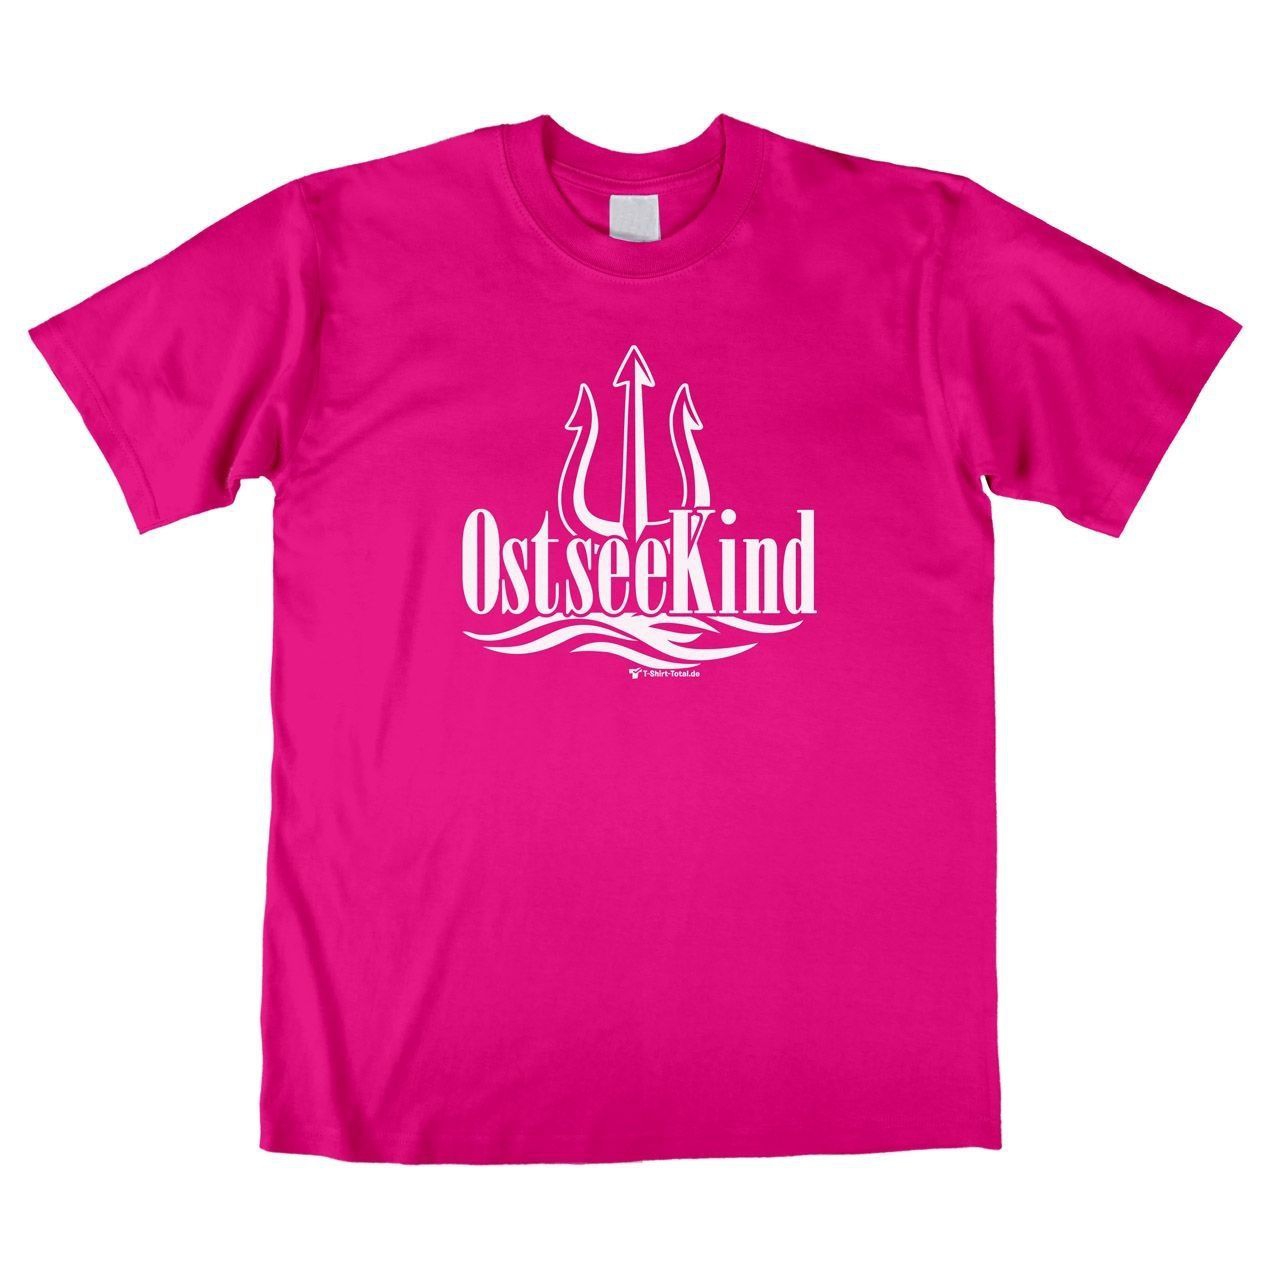 Ostsee Kind (für Erwachsene) Unisex T-Shirt pink Large